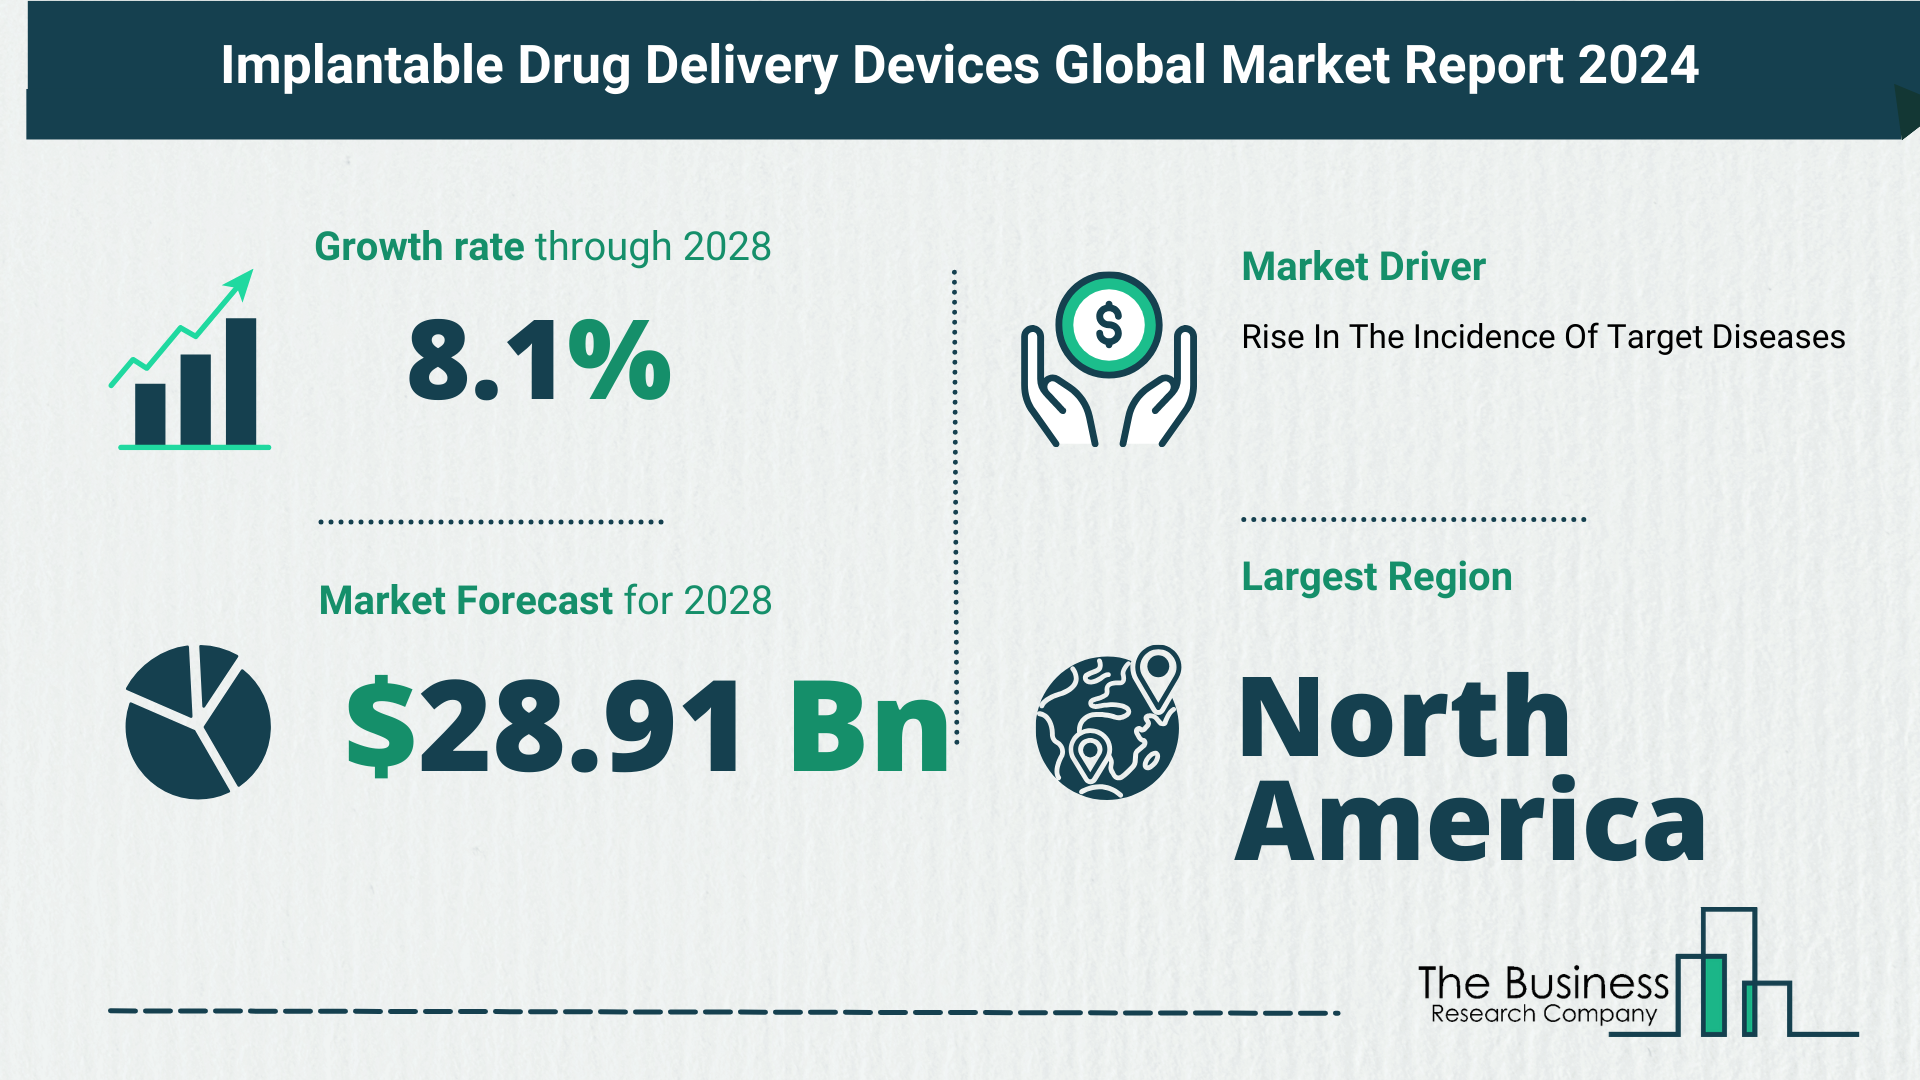 Global Implantable Drug Delivery Devices Market